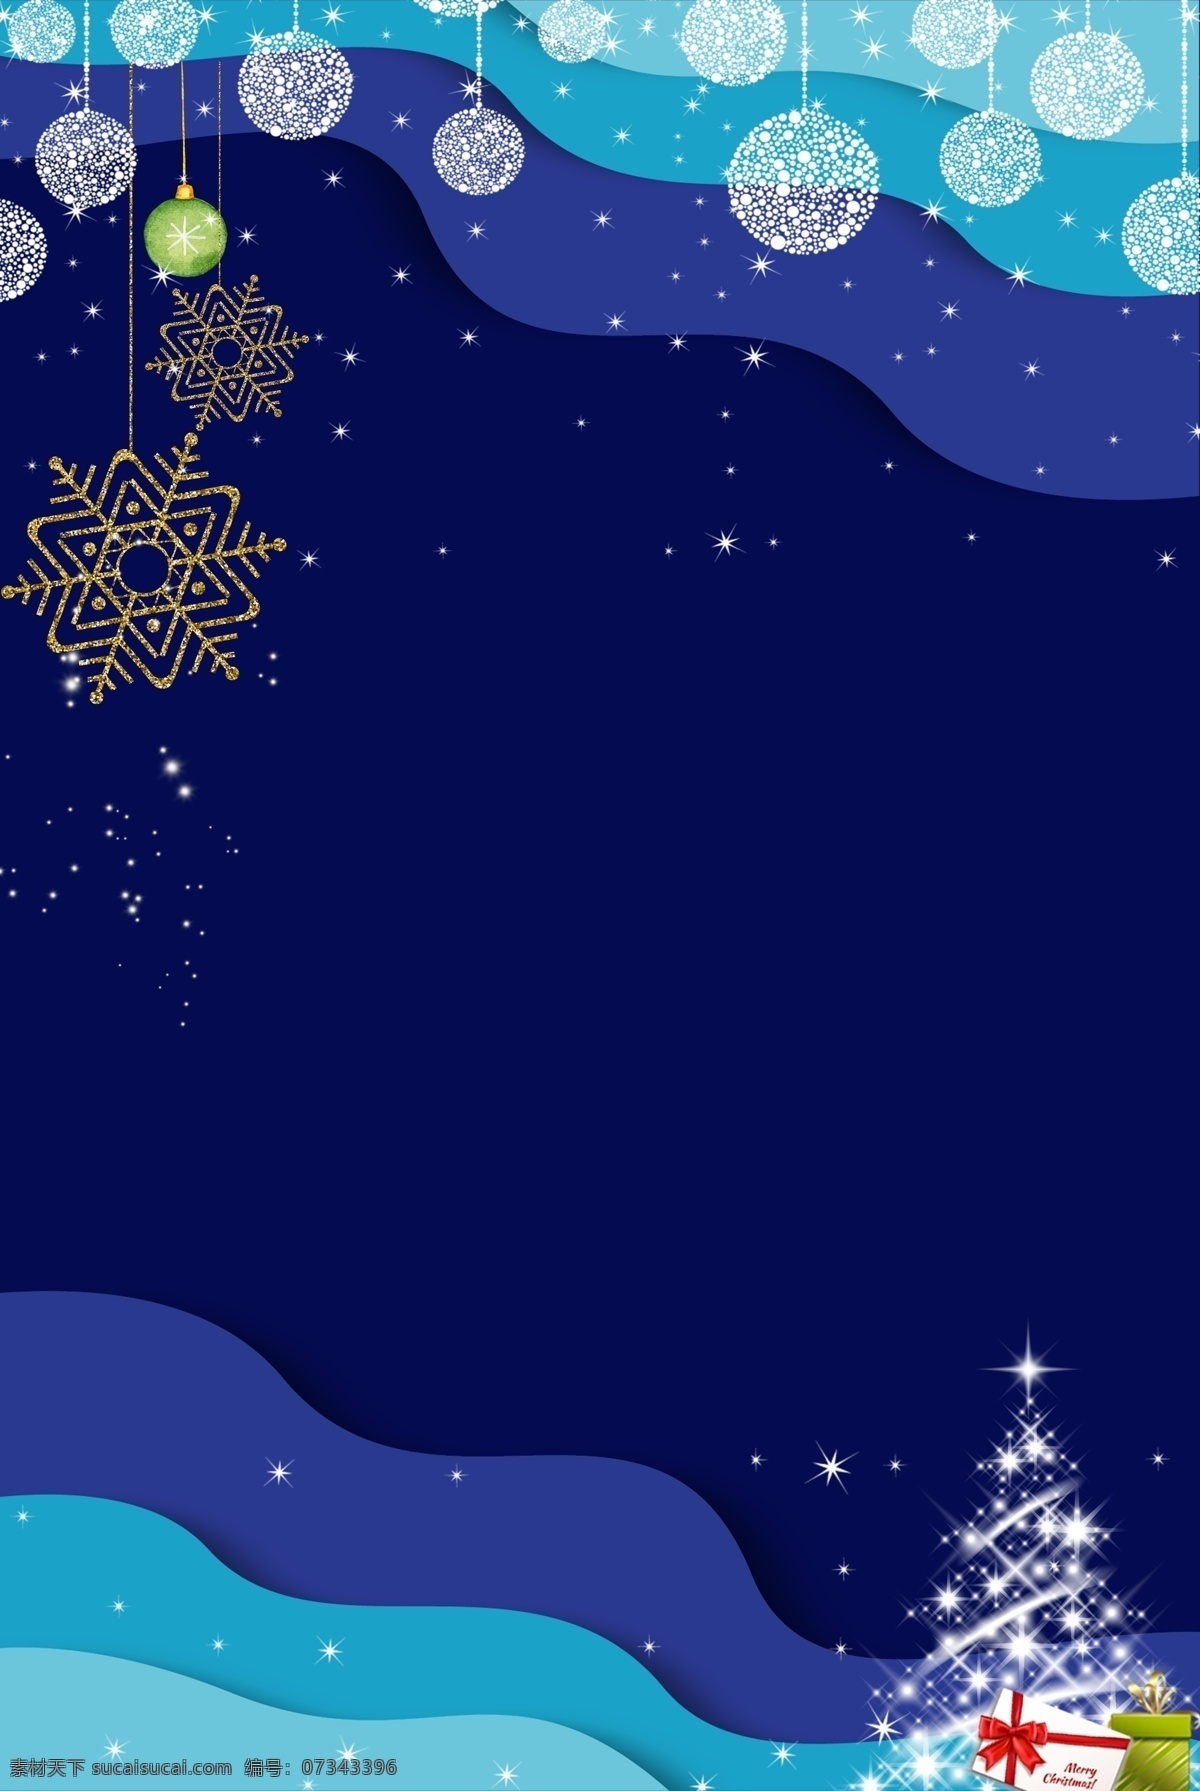 圣诞 简约 风 蓝色 折纸 边框 淘宝 背景 简约风 蓝色折纸 金星 圣诞树 礼物盒 淘宝背景 5背景 温暖